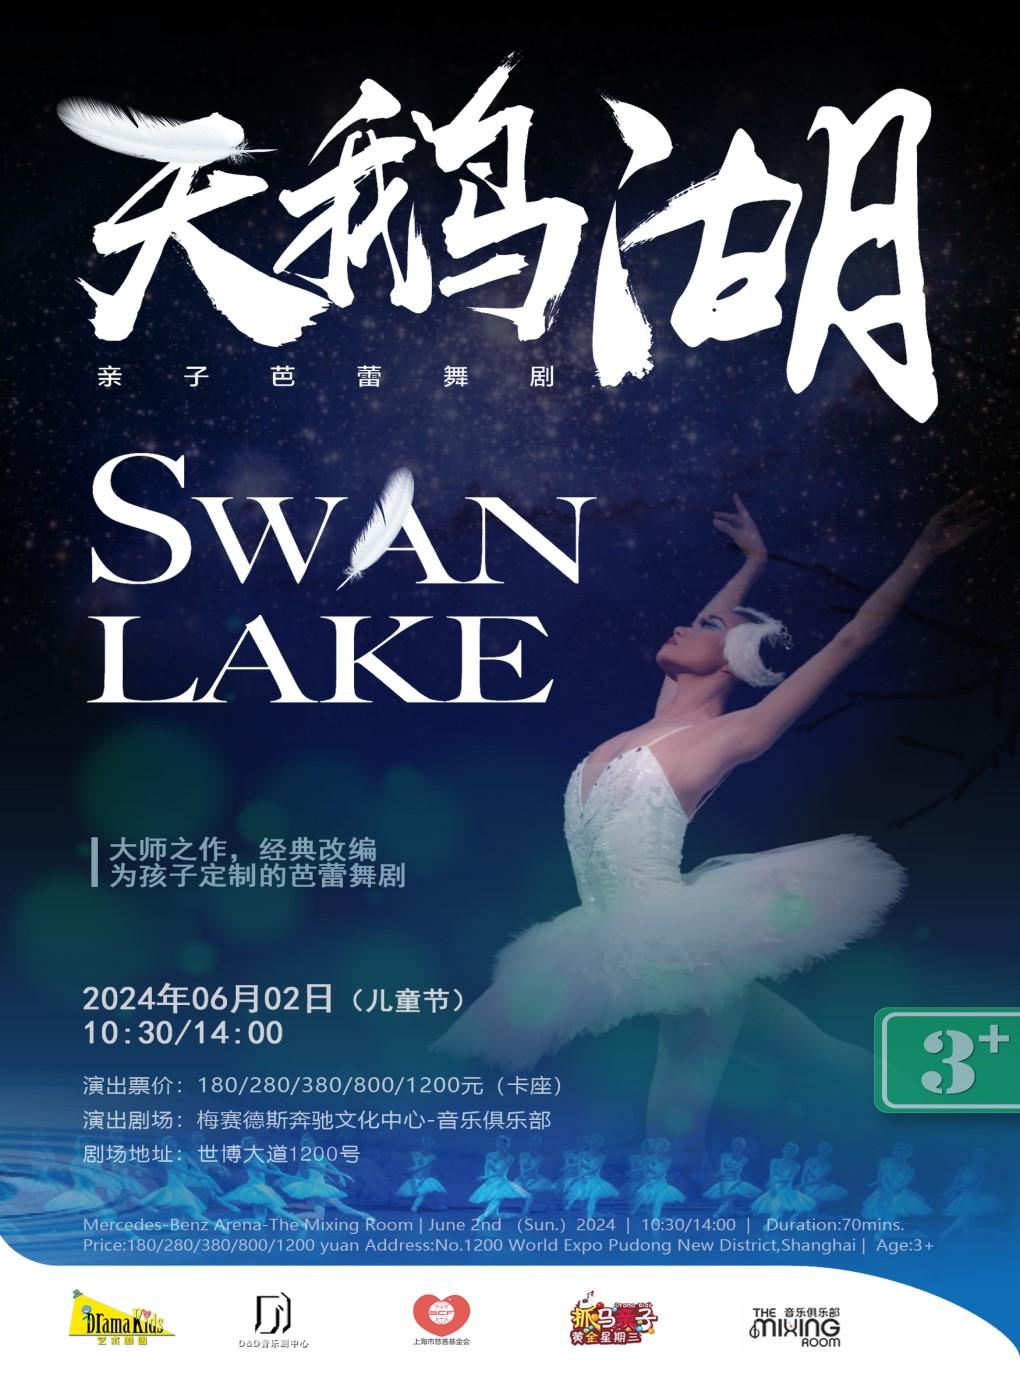 天鹅湖 Swan Lake上海站